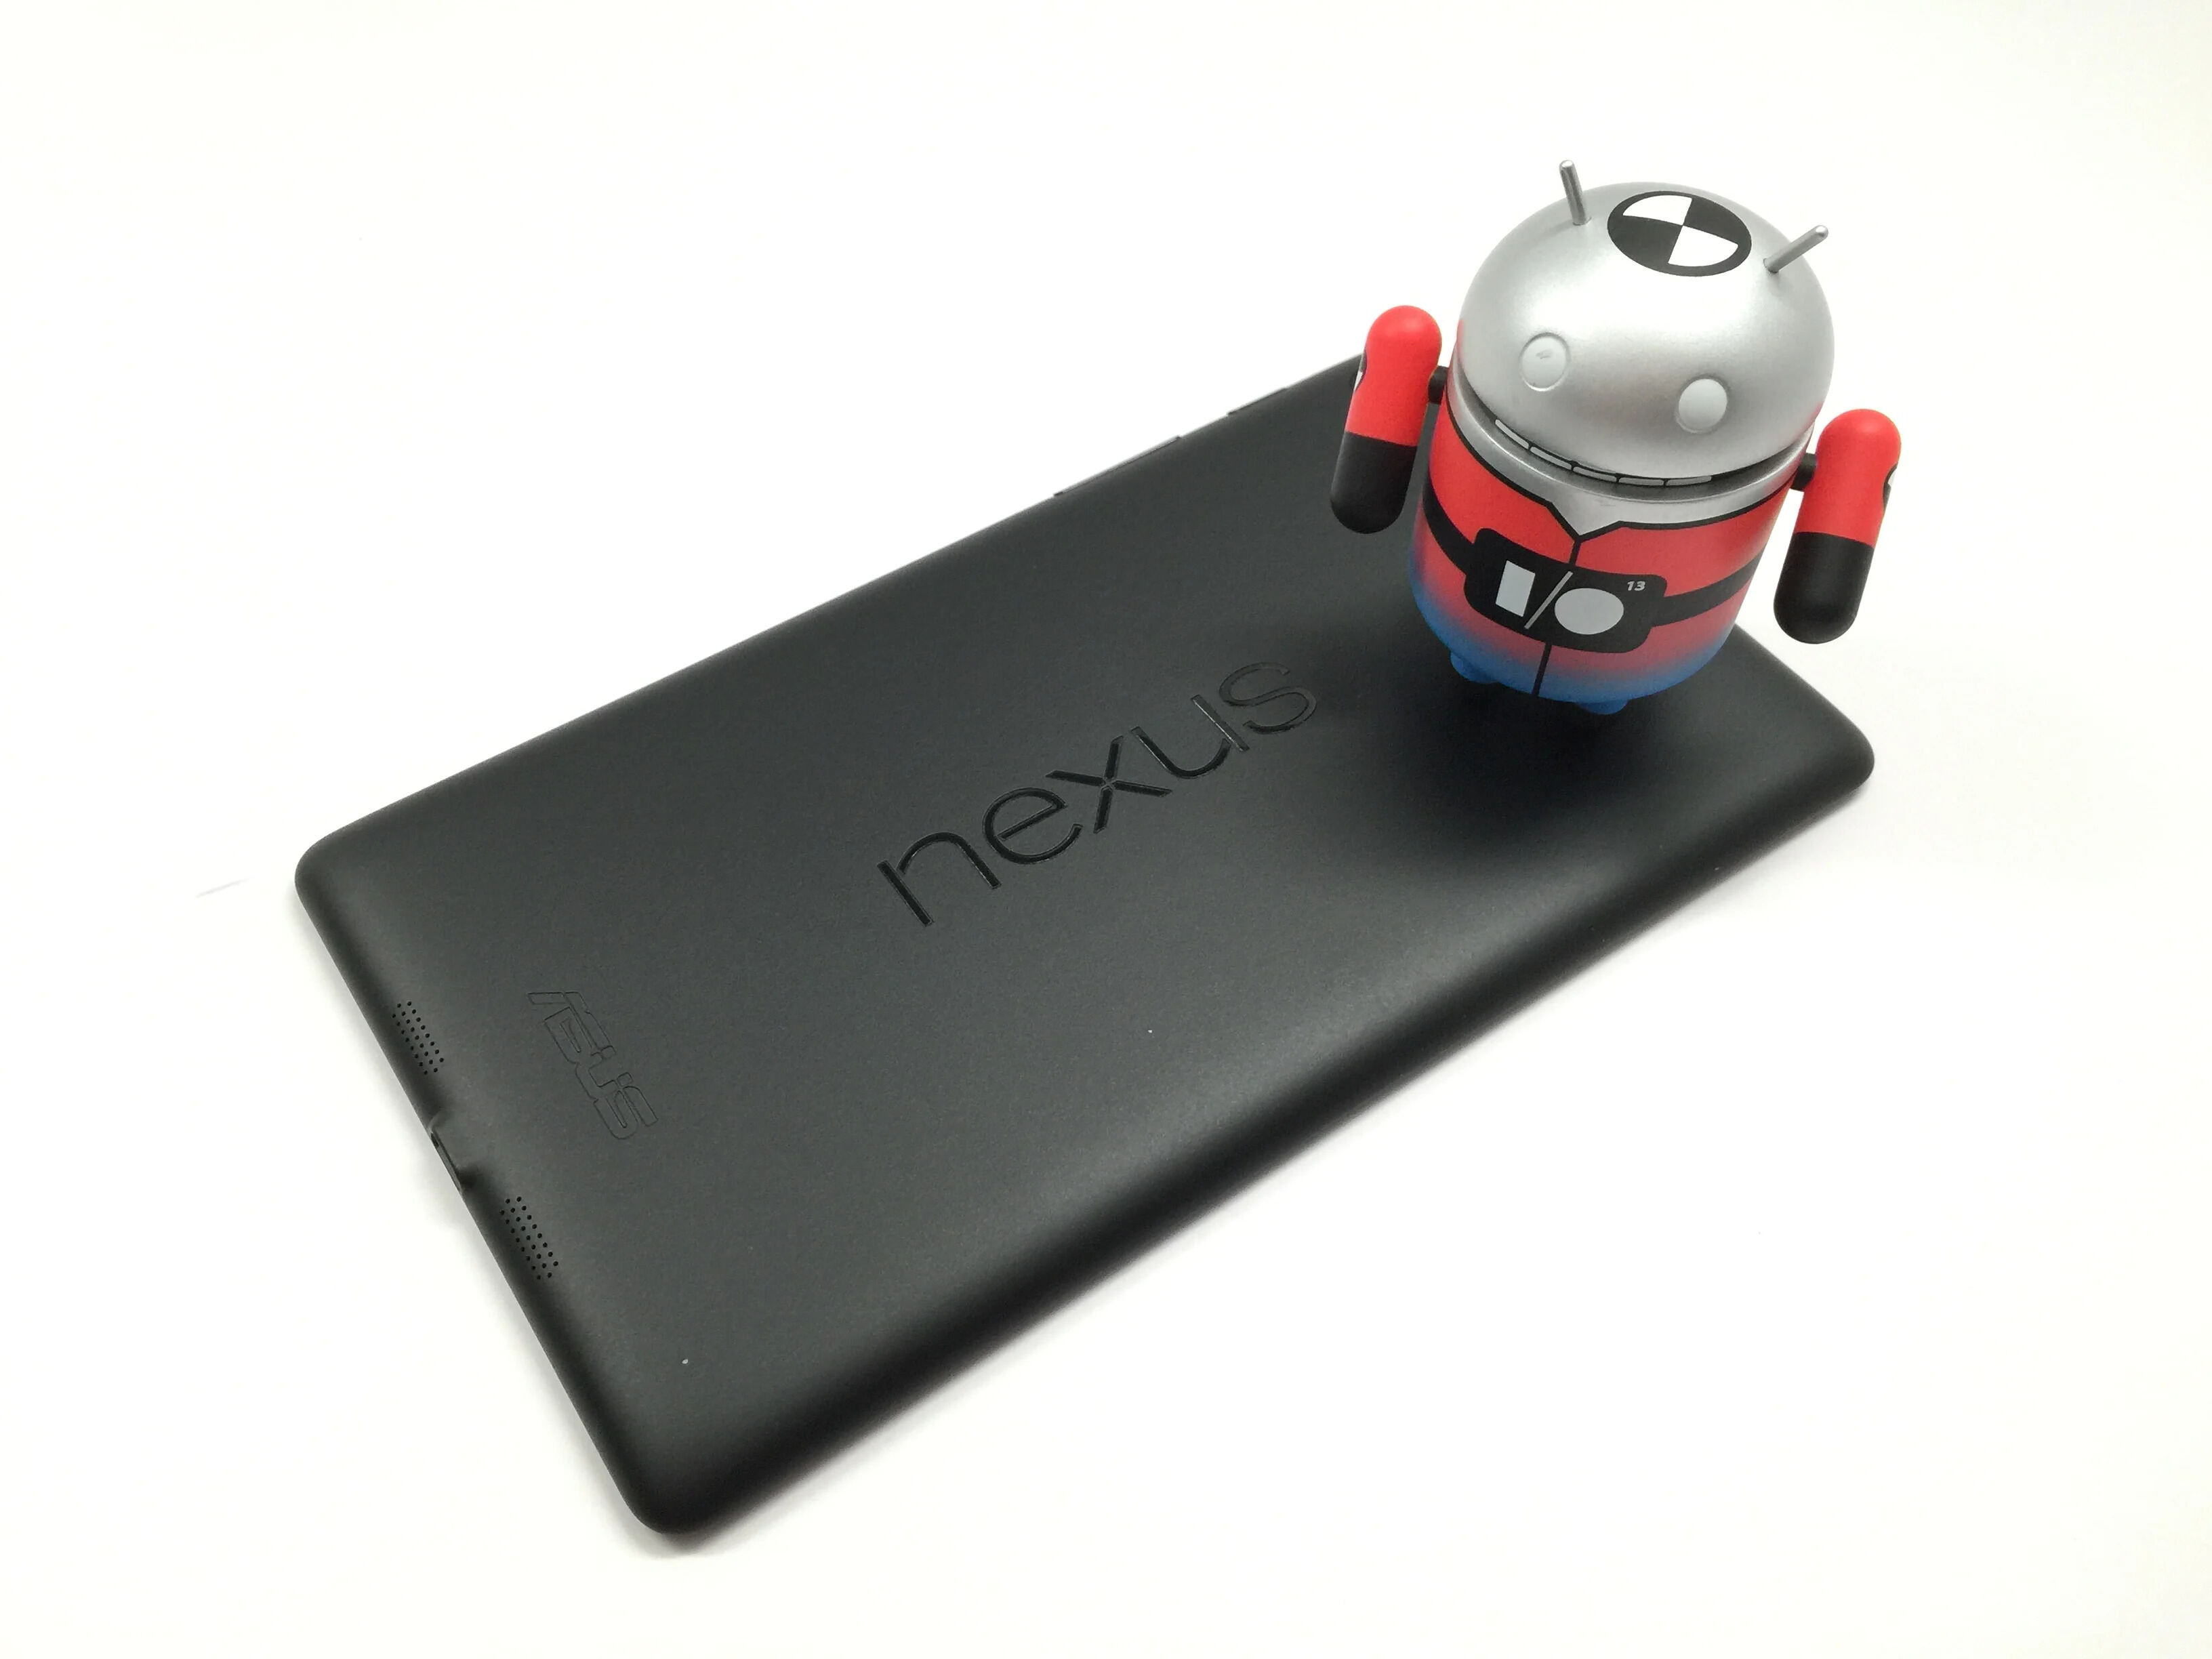 How To Fix Slow Nexus 7 Tablet